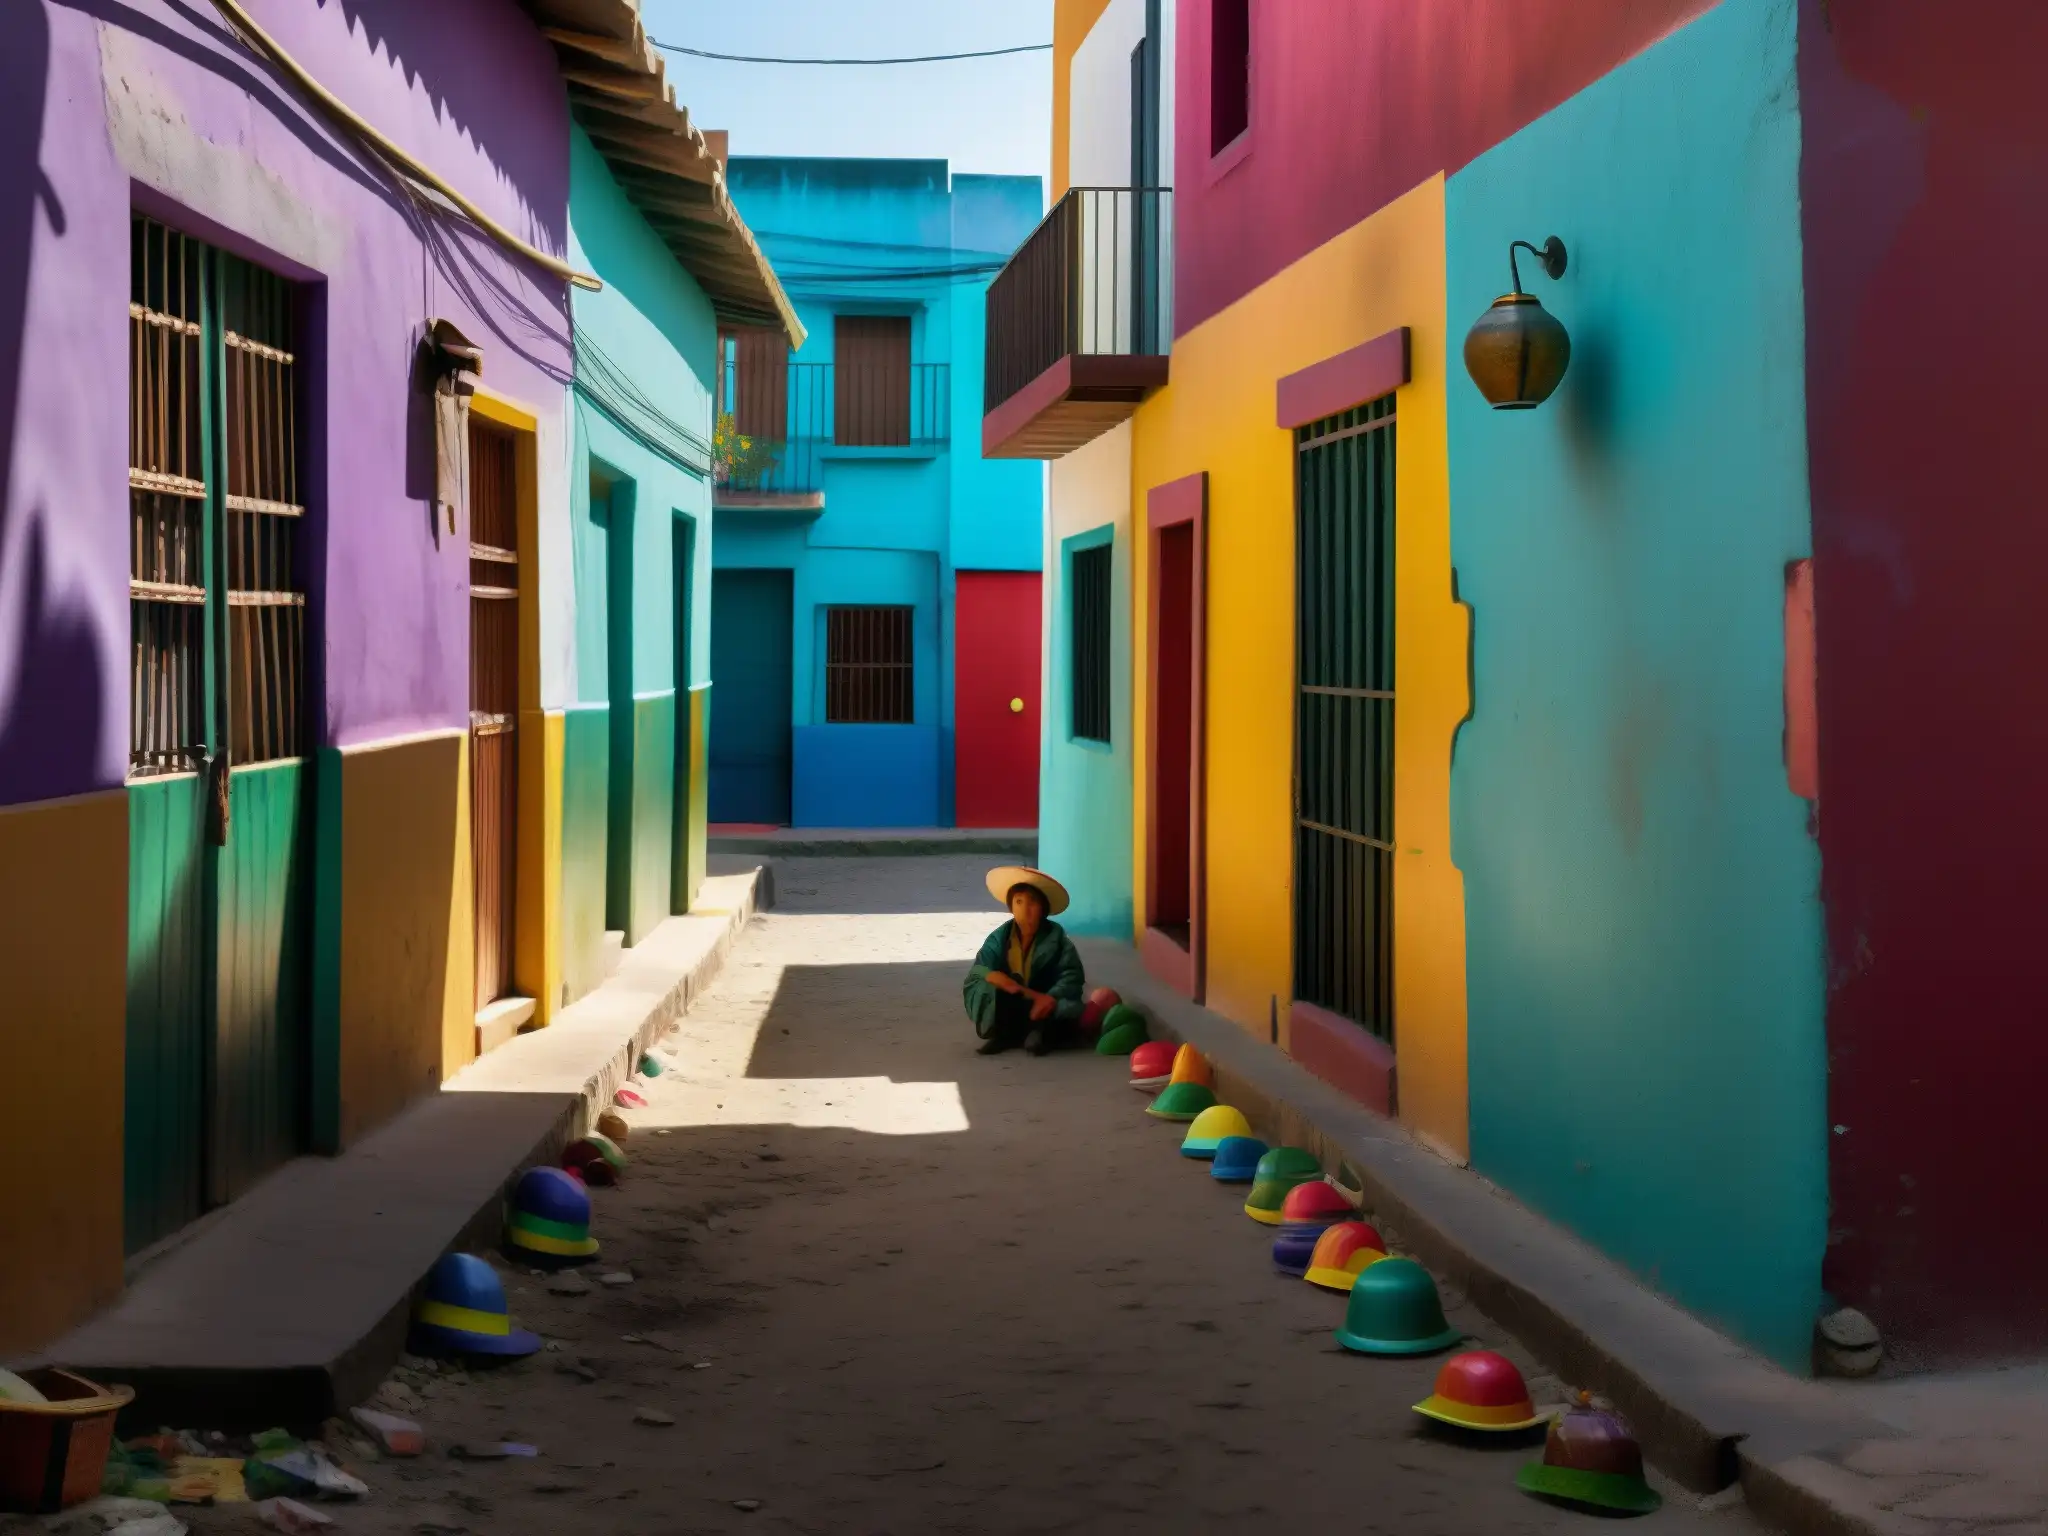 Un callejón tenue en una ciudad mexicana, con murales coloridos